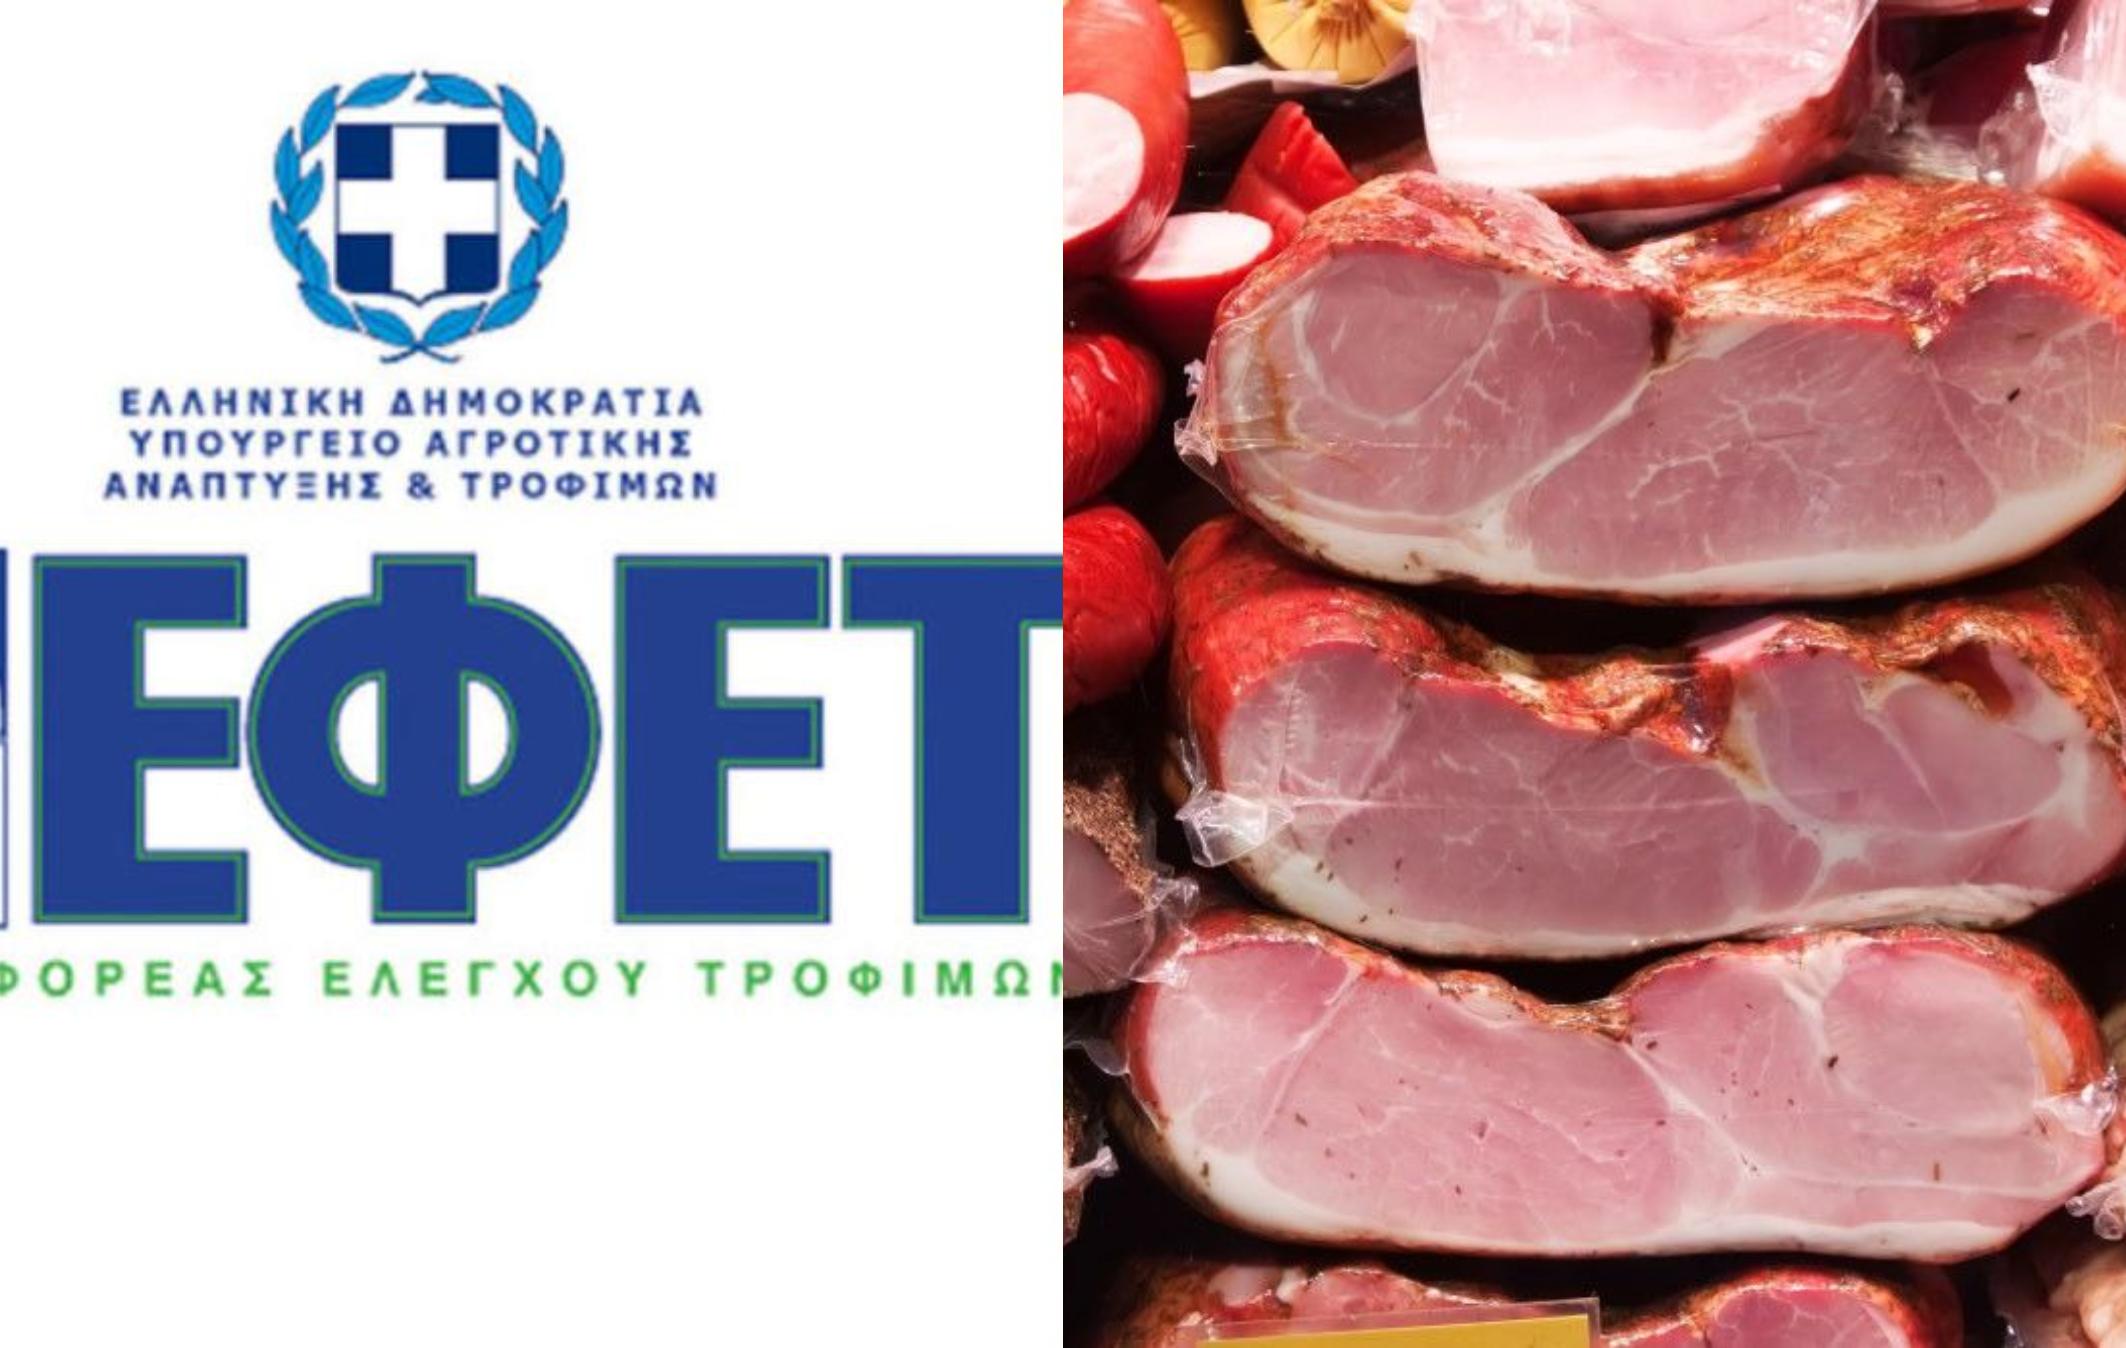 ΕΦΕΤ: Επικίνδυνα κρέατα και αλλαντικά με νιτροζαμίνες που μπορούν να προκαλέσουν καρκίνο